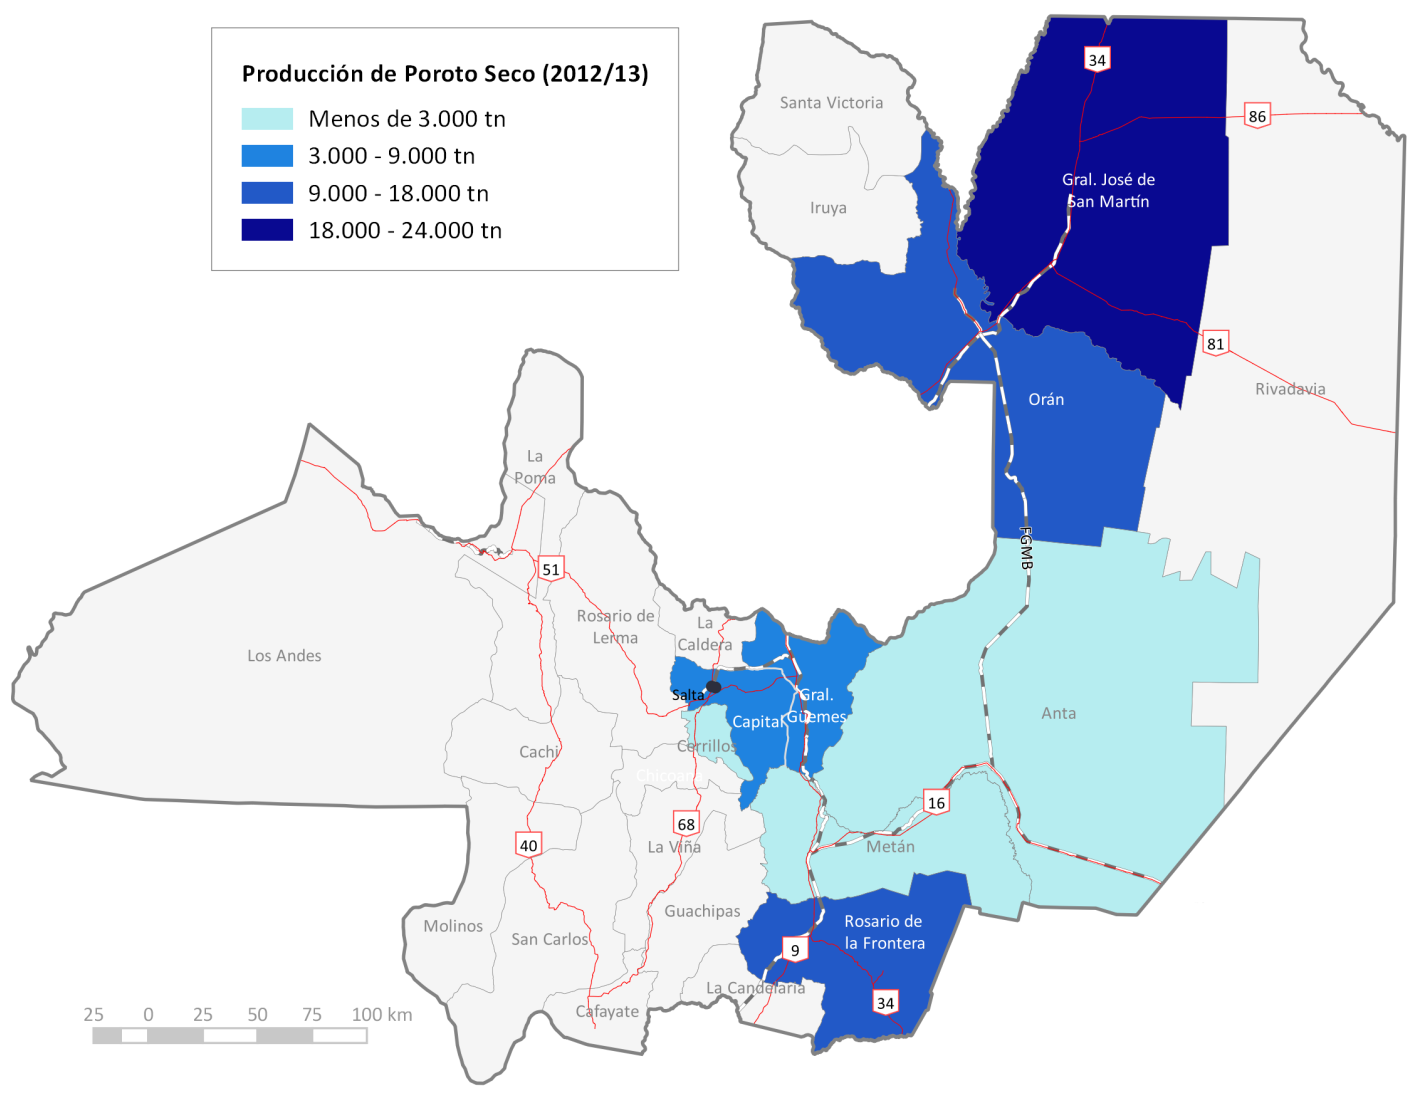 2.4 Complejo Hortícola-Poroto Configuración territorial: Nota: se representa la producción departamental de Poroto Seco que superan una participación del 2% en el total provincial.